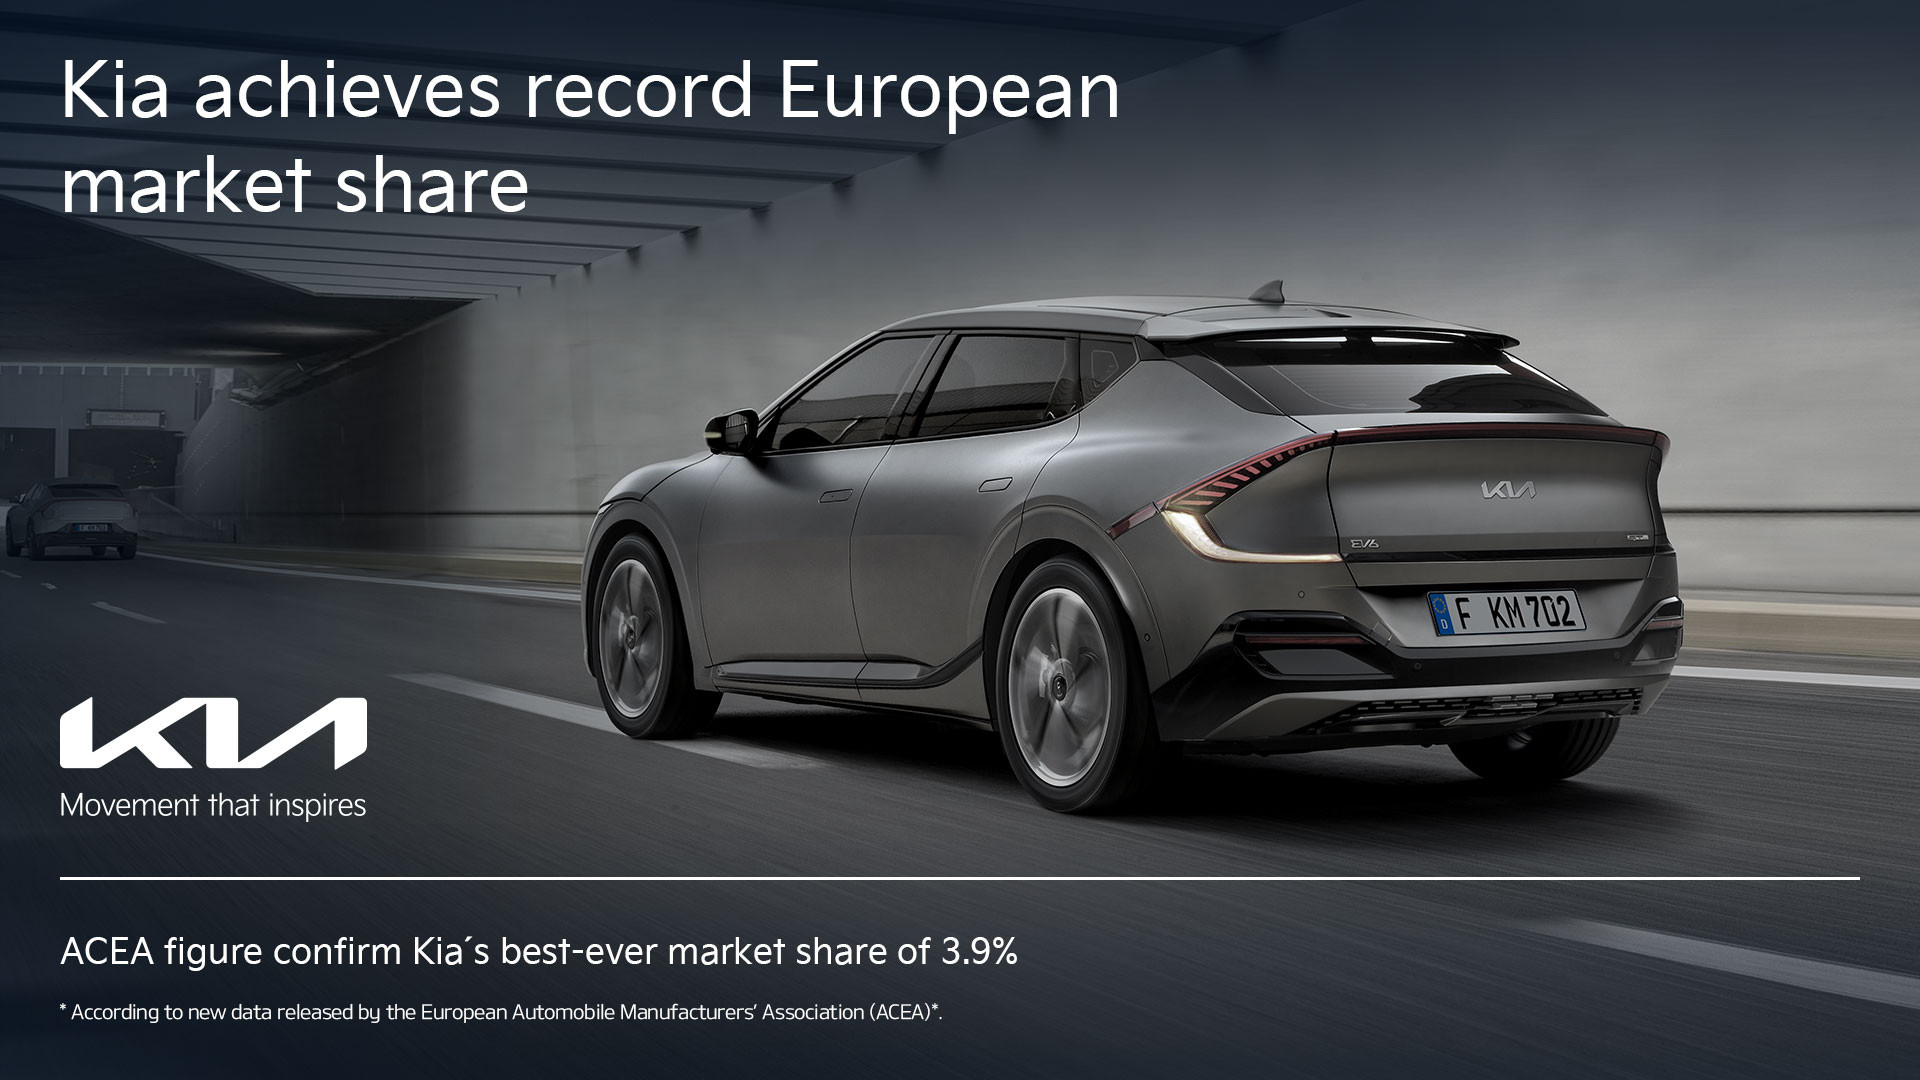 Η Kia επιτυγχάνει το καλύτερο μερίδιο αγοράς στην Ευρώπη